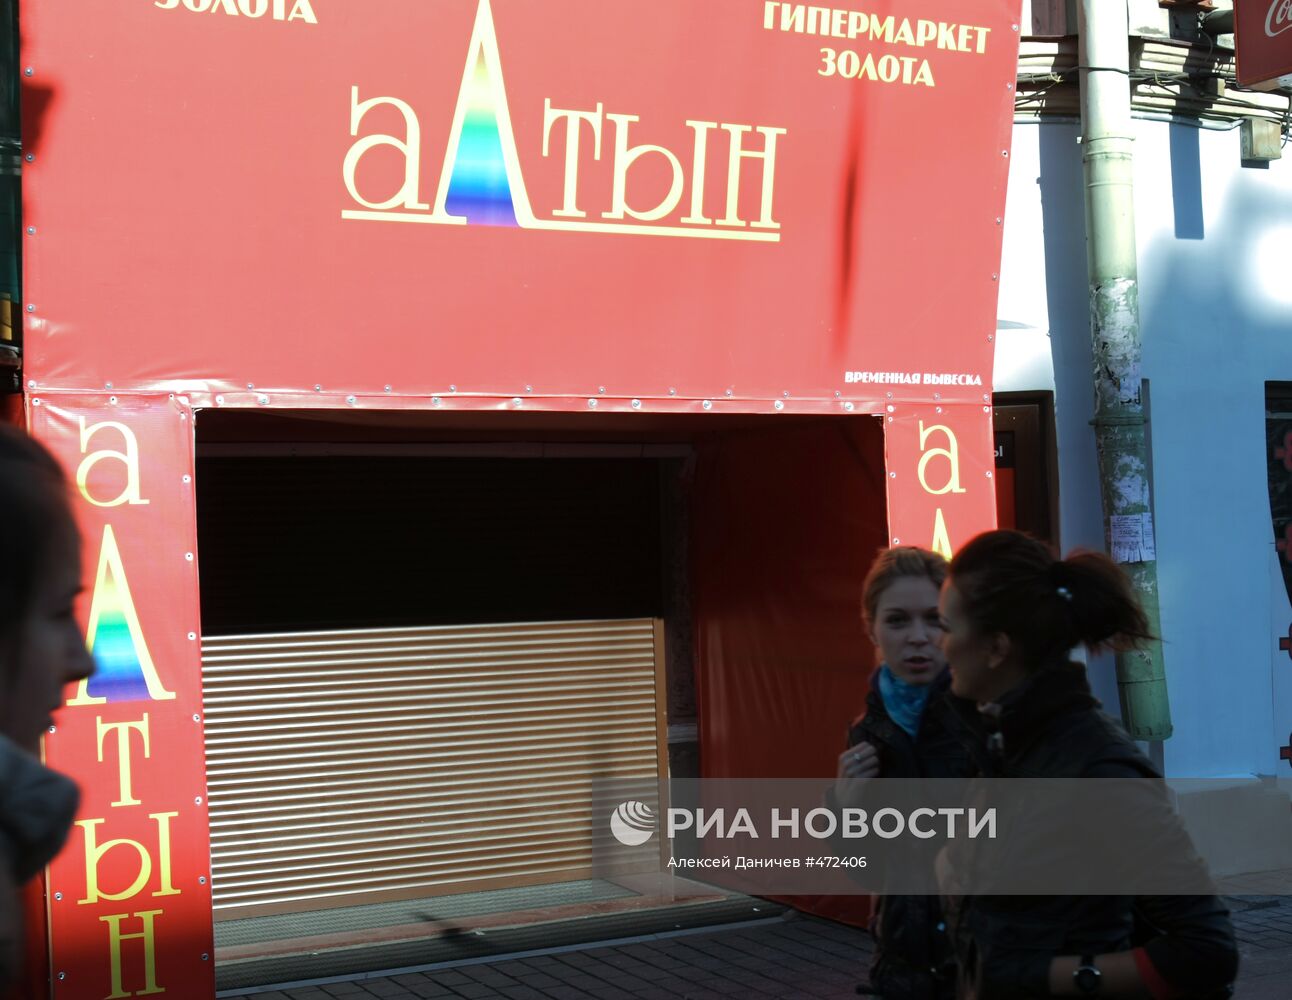 В Санкт-Петербурге закрылись магазины сети "Алтын"